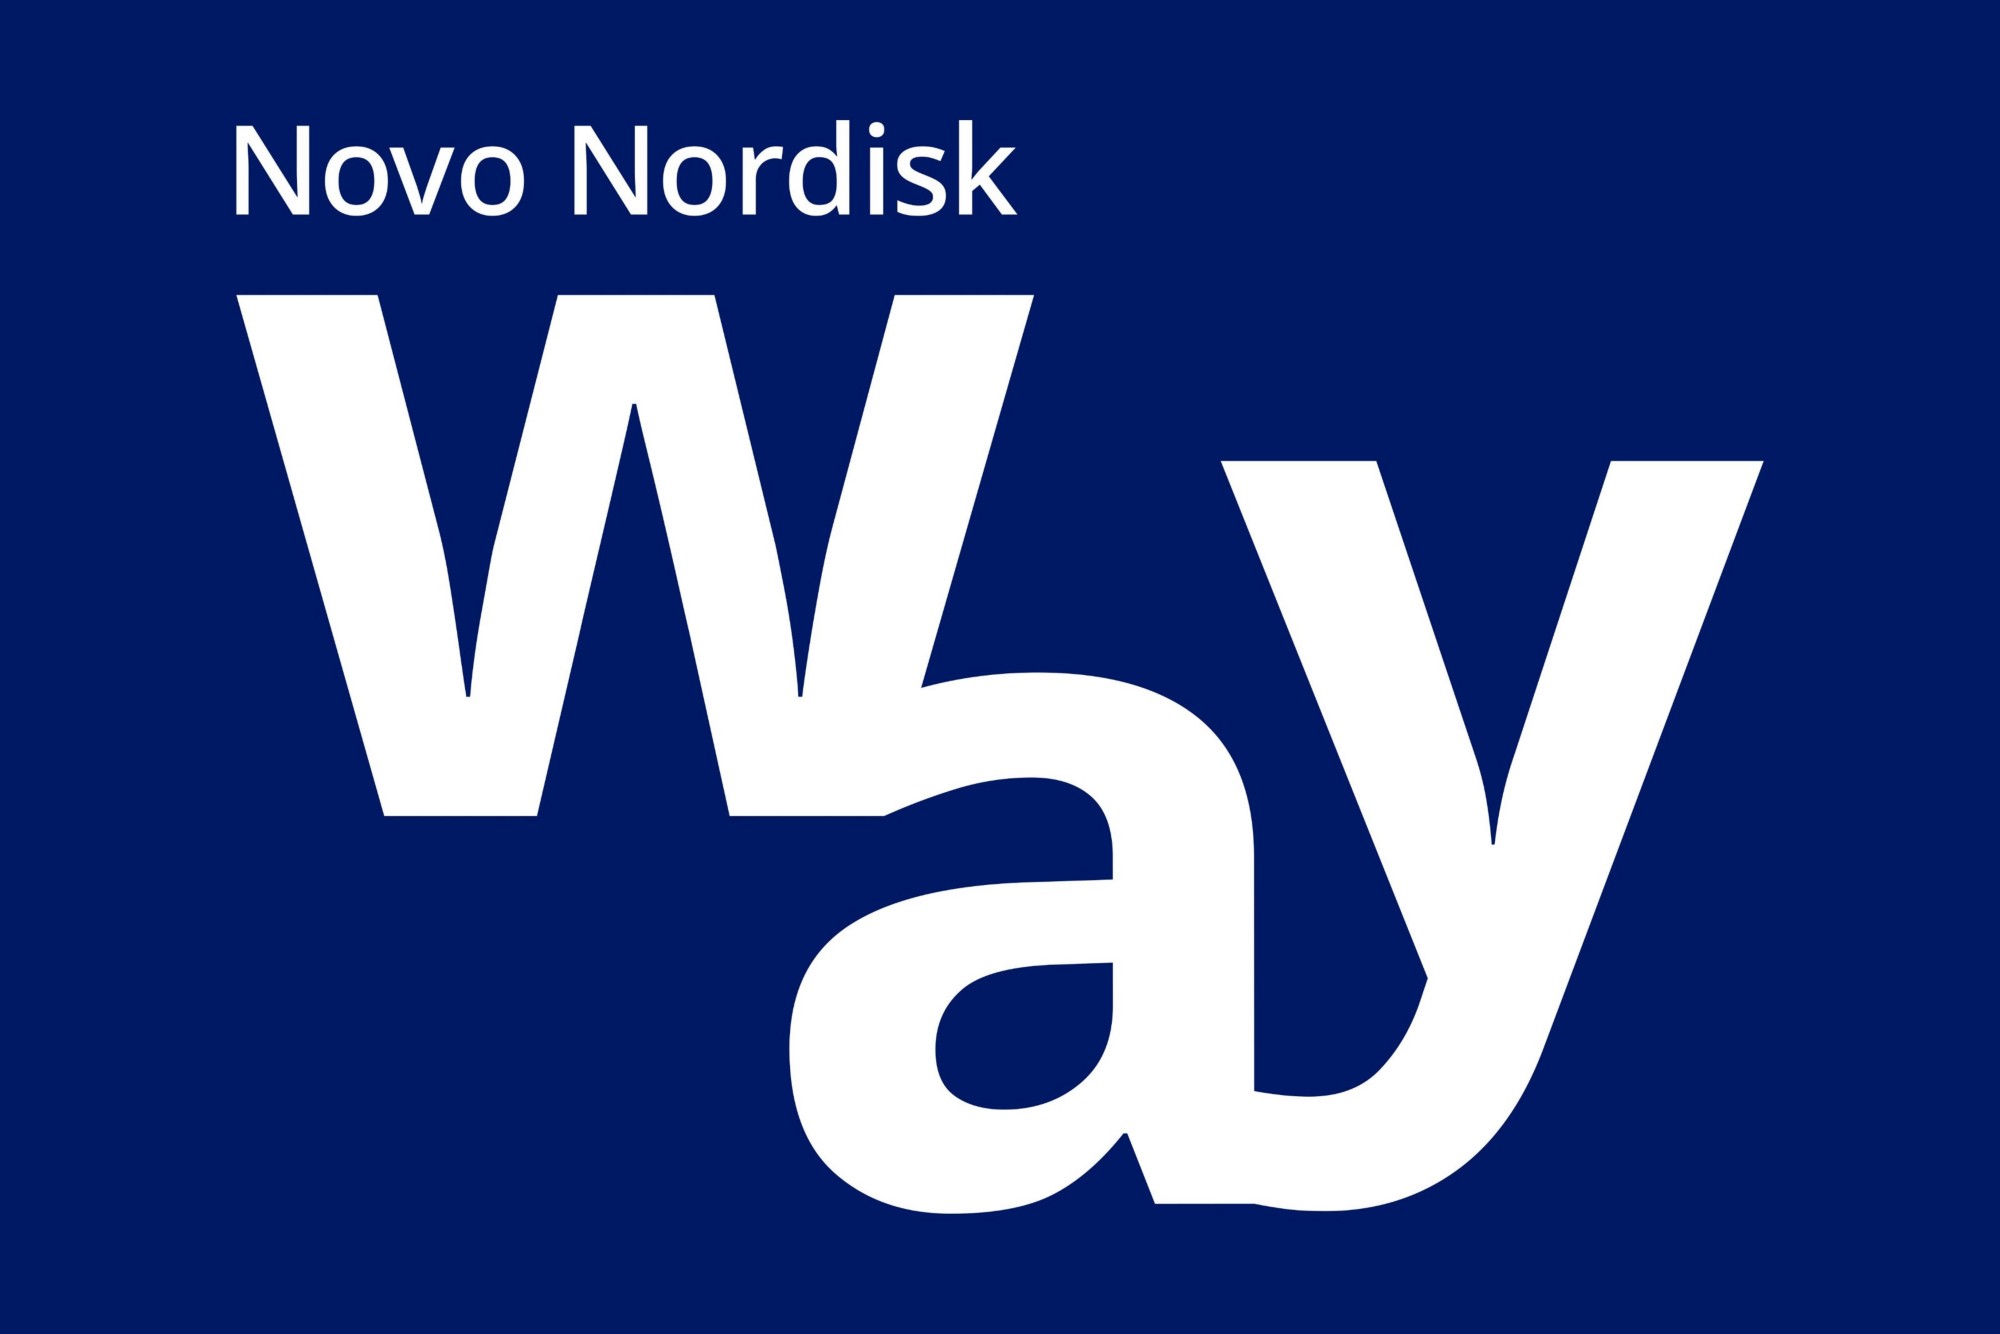 The Novo Nordisk Way